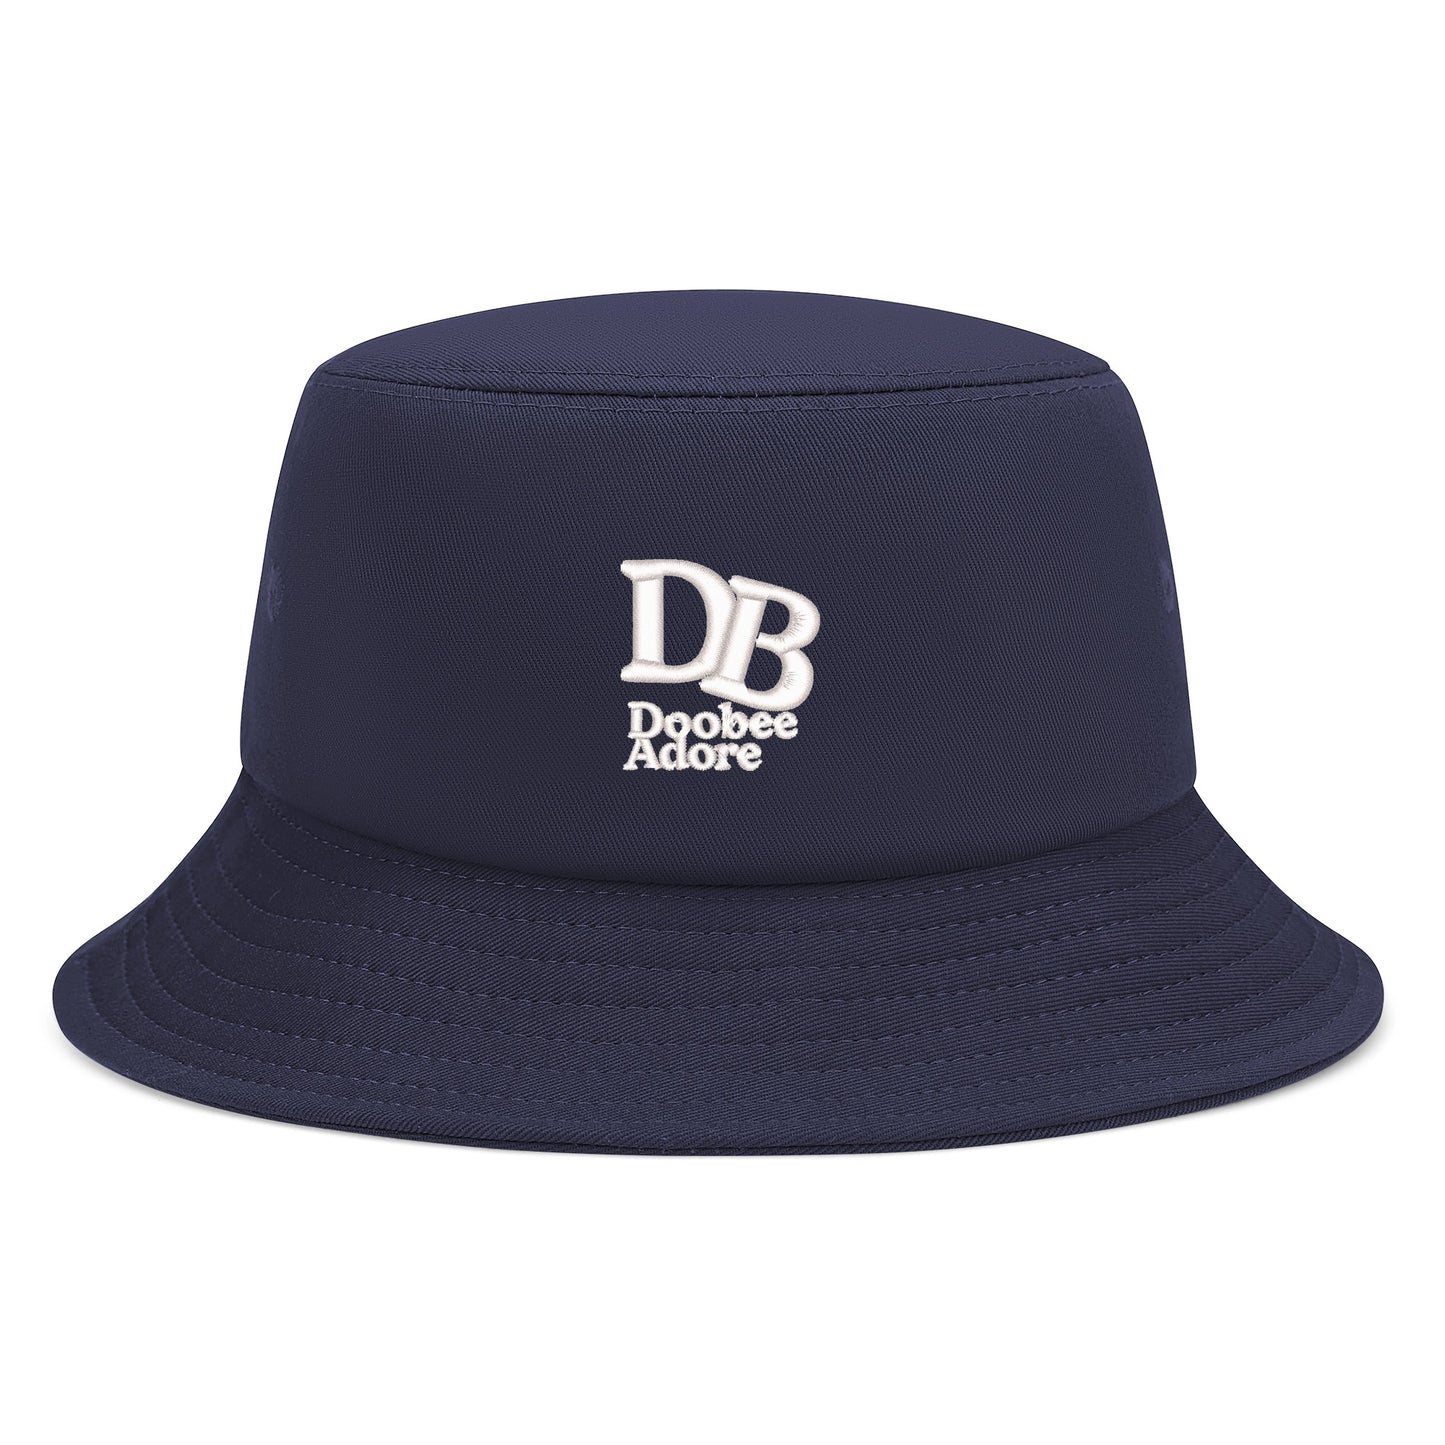 Doobee Adore Staple Bucket Hats